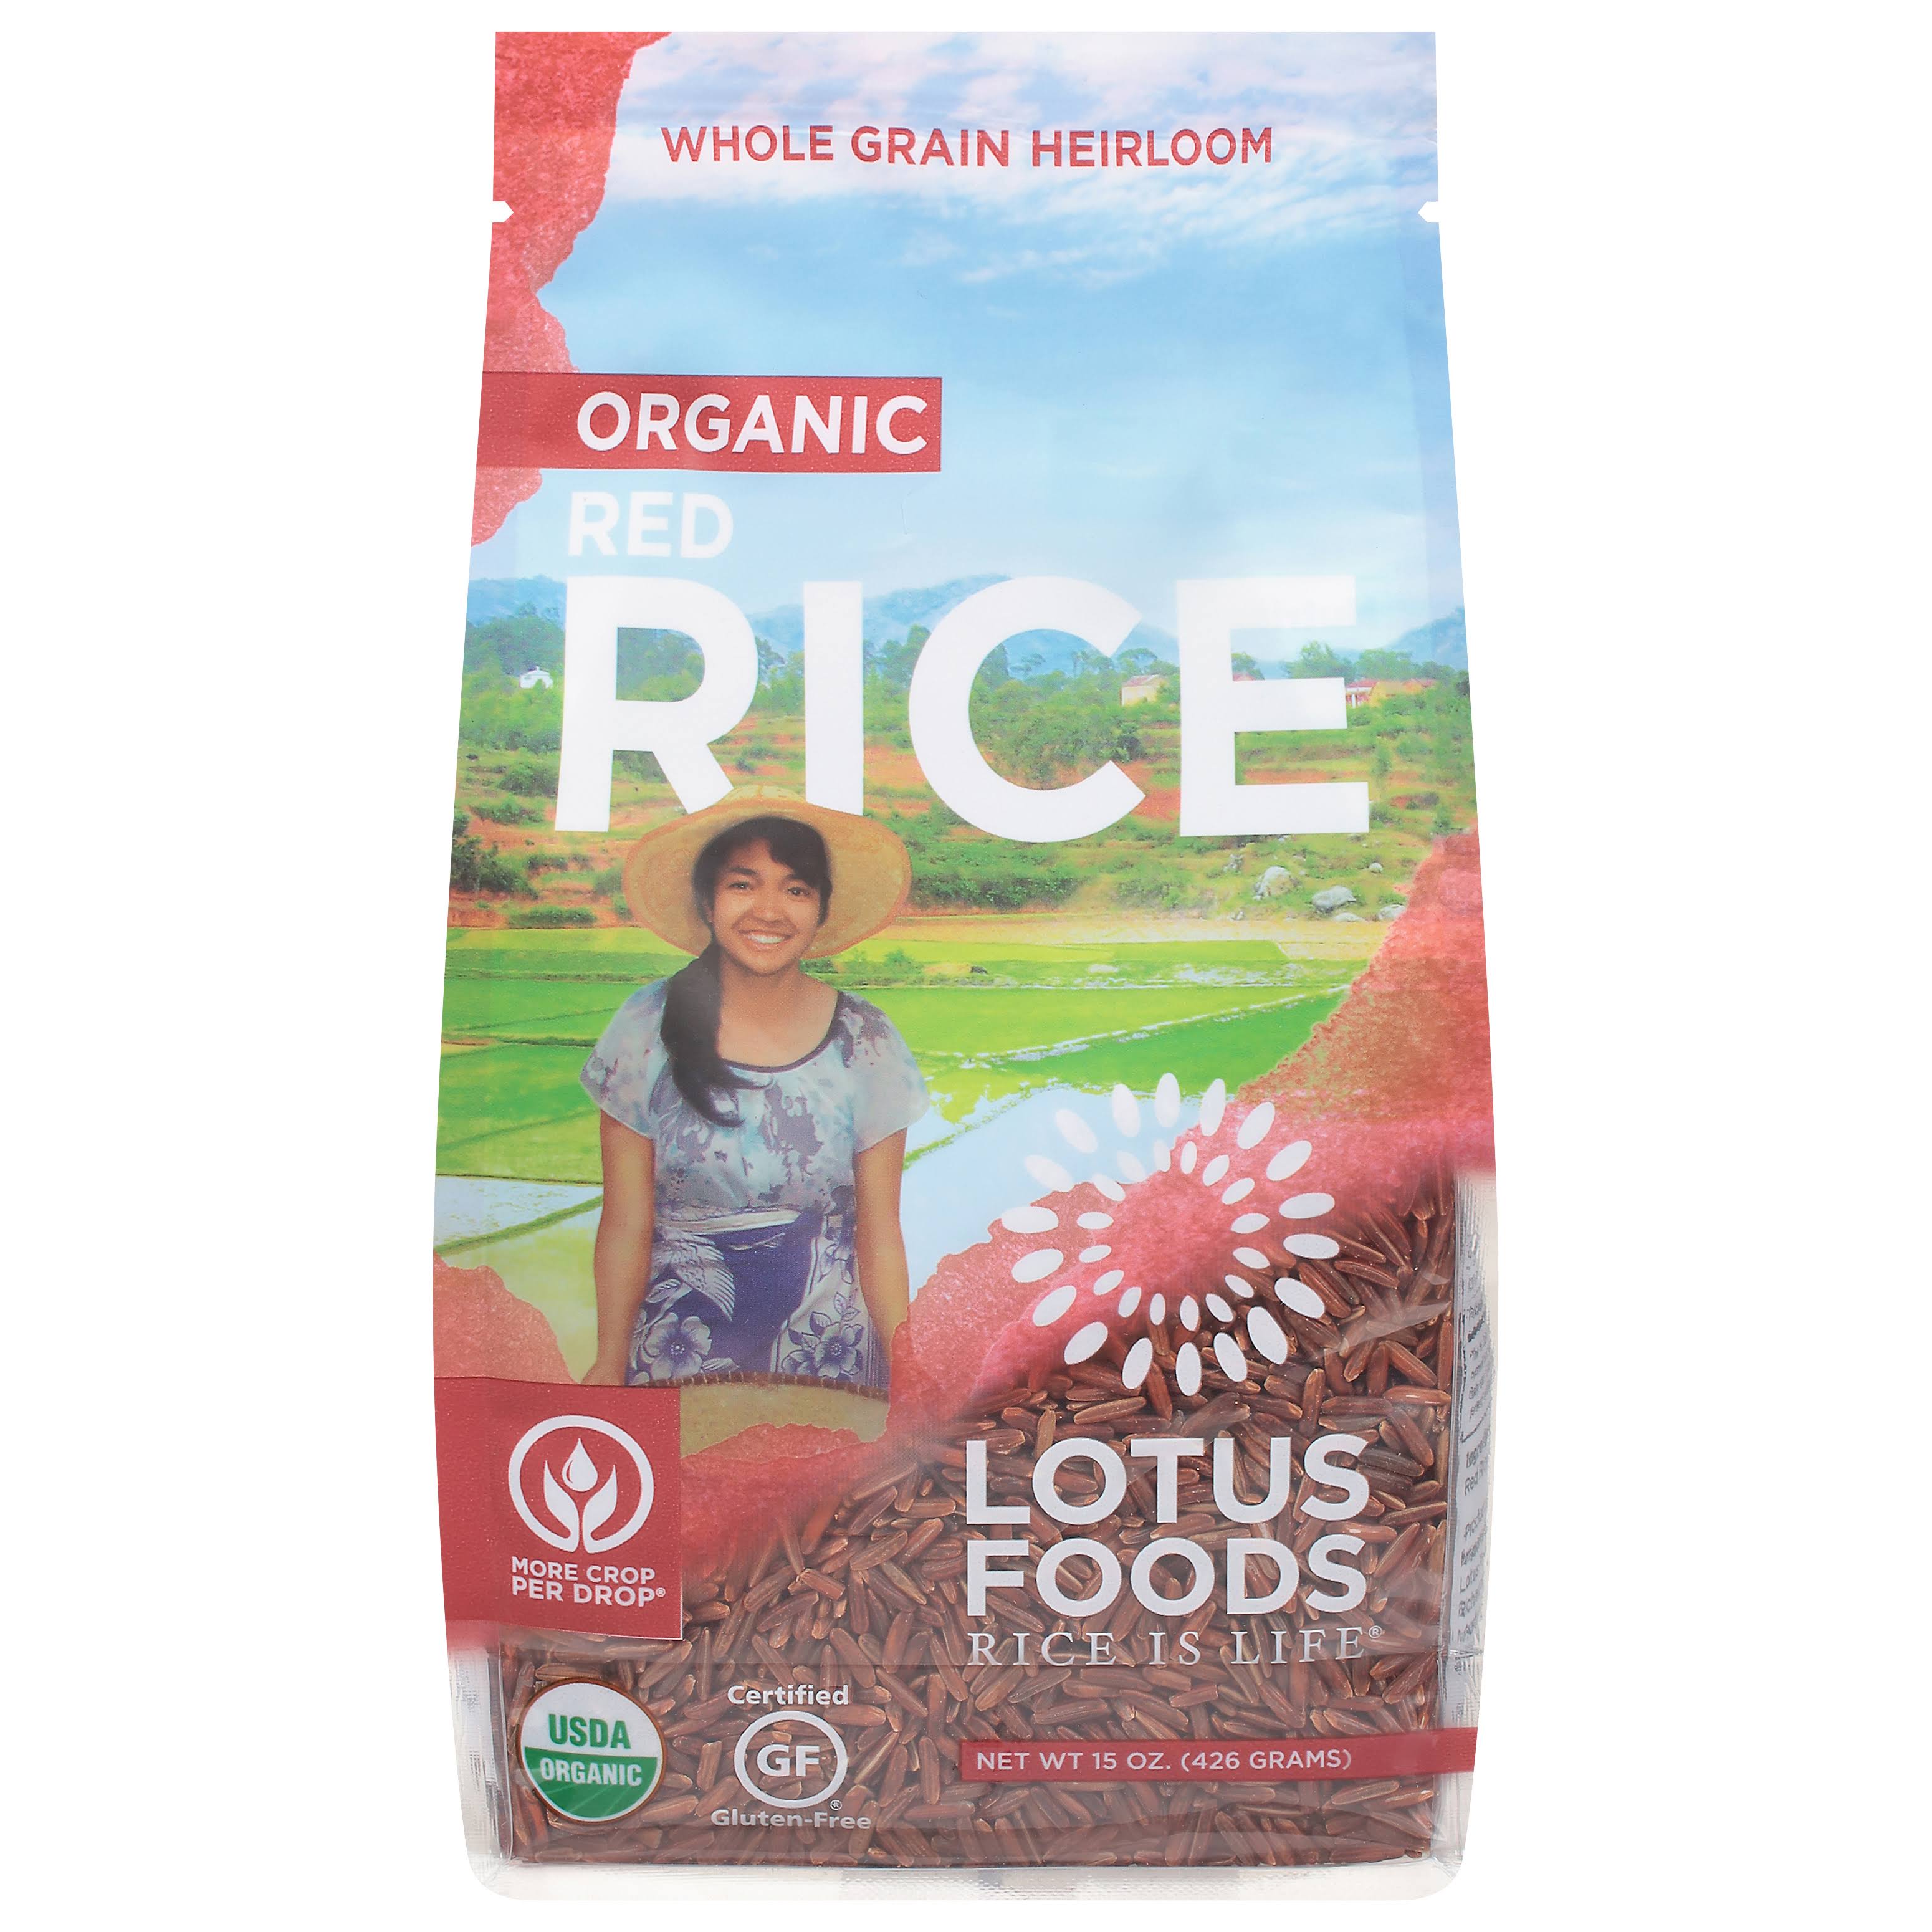 Lotus Foods Organic Red Rice - 15oz